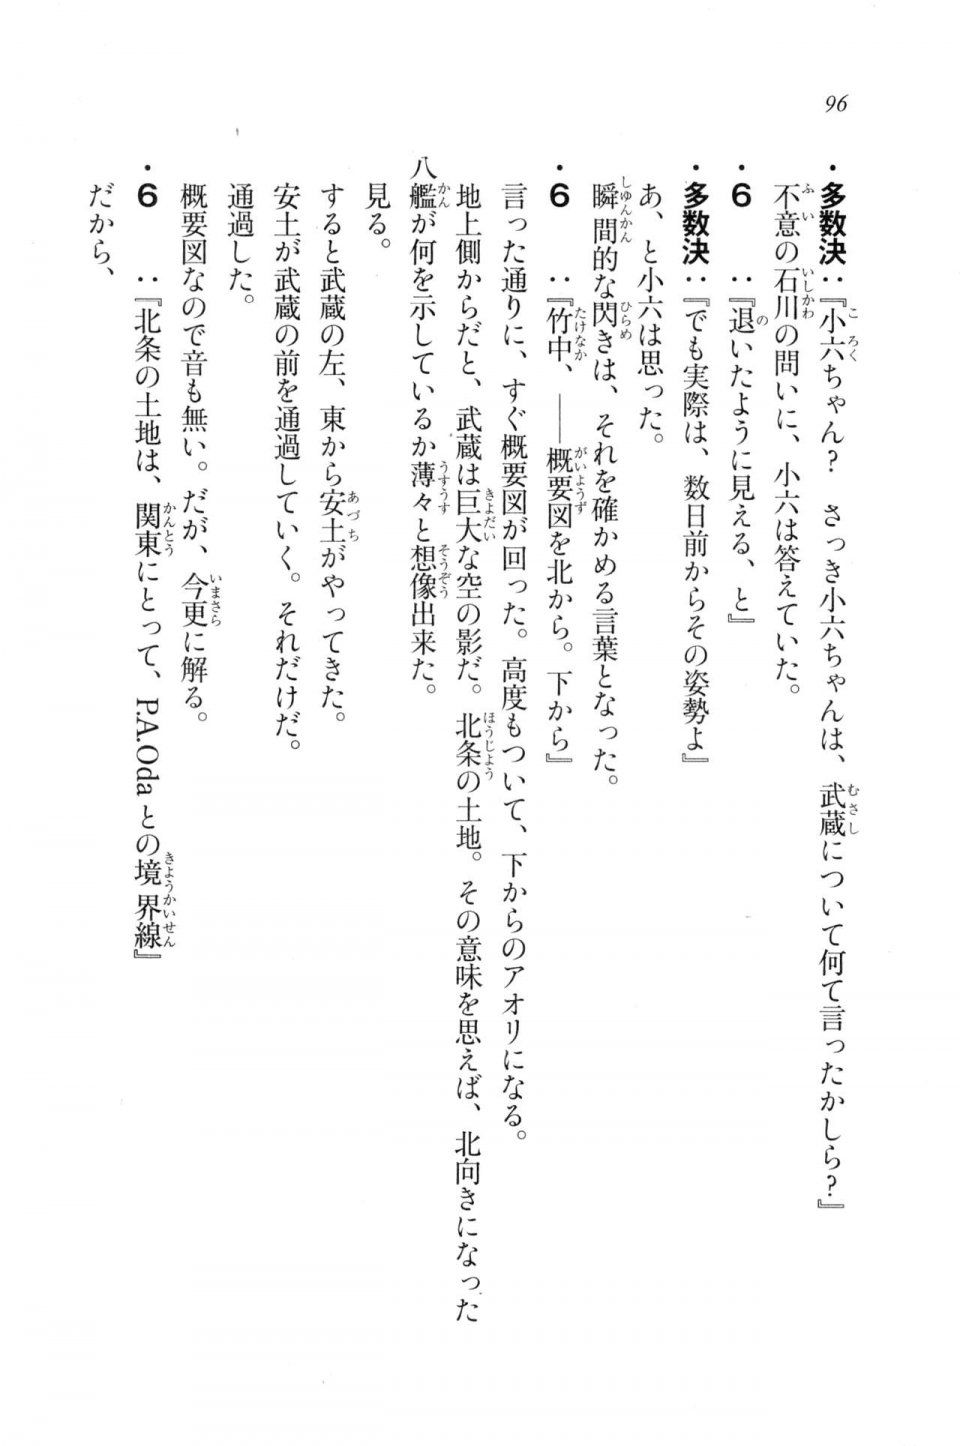 Kyoukai Senjou no Horizon LN Vol 20(8B) - Photo #96